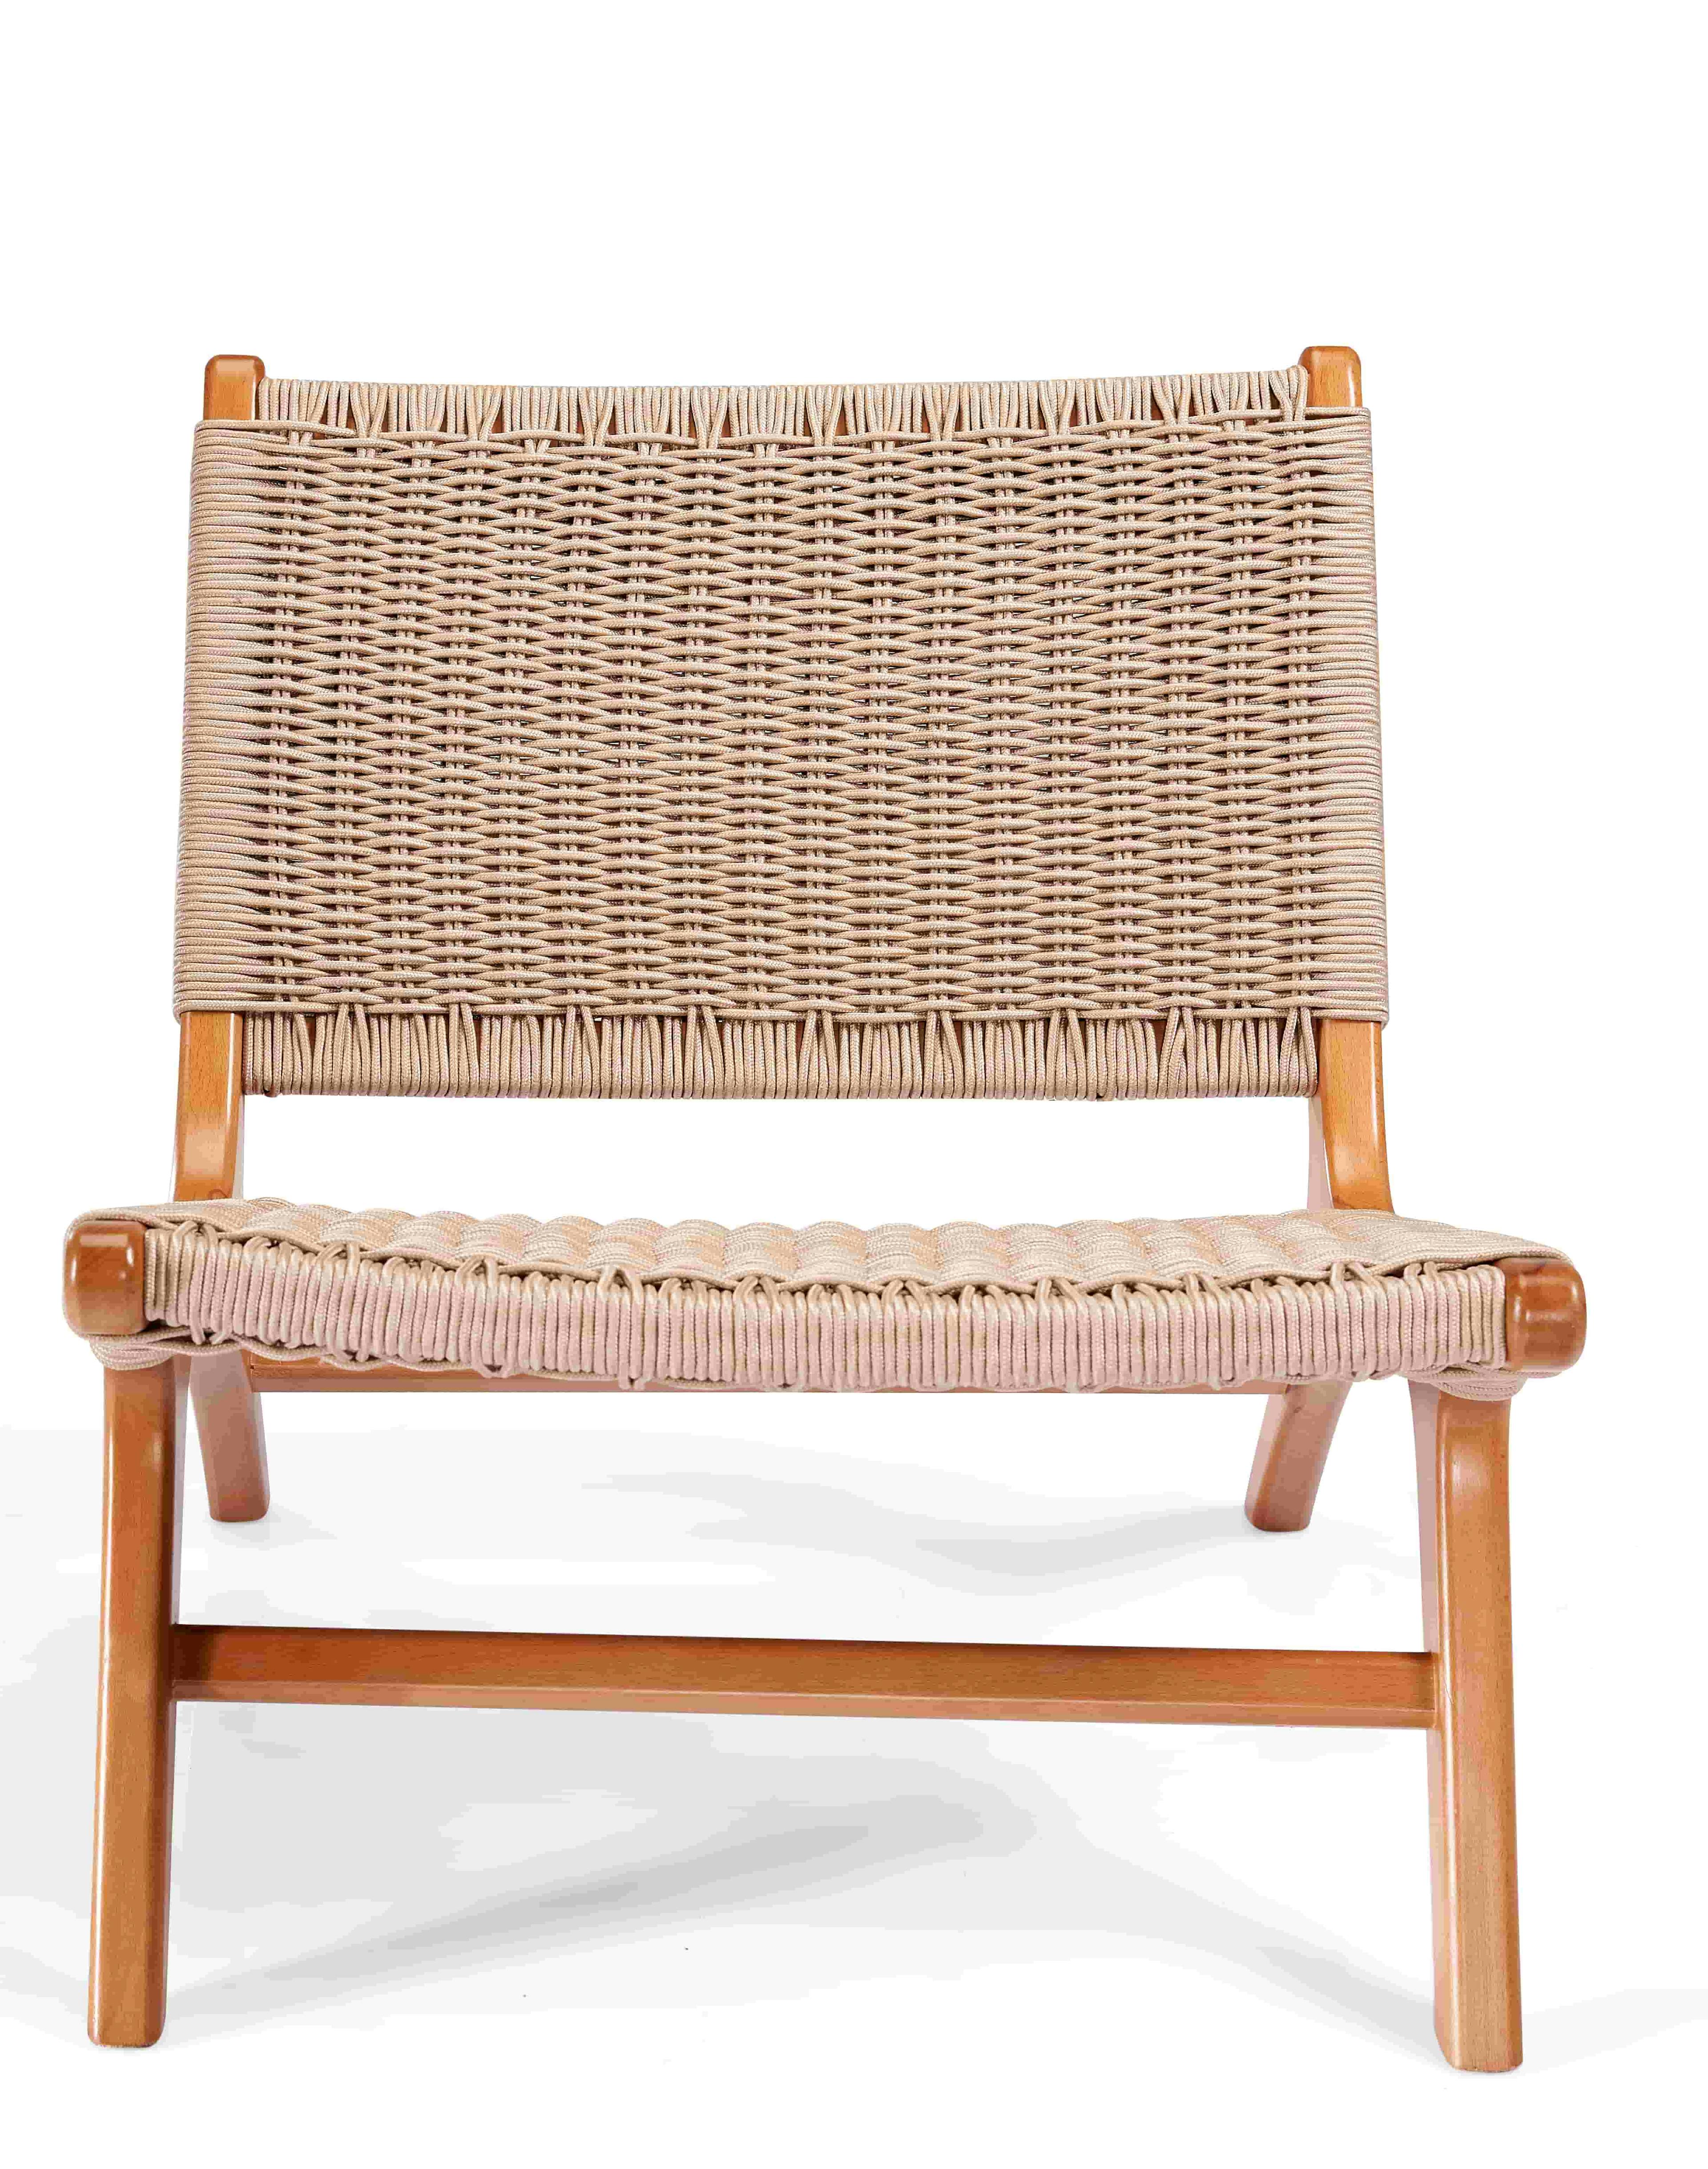 كرسي بوهو منسوج من خشب الزان الطبيعي 1